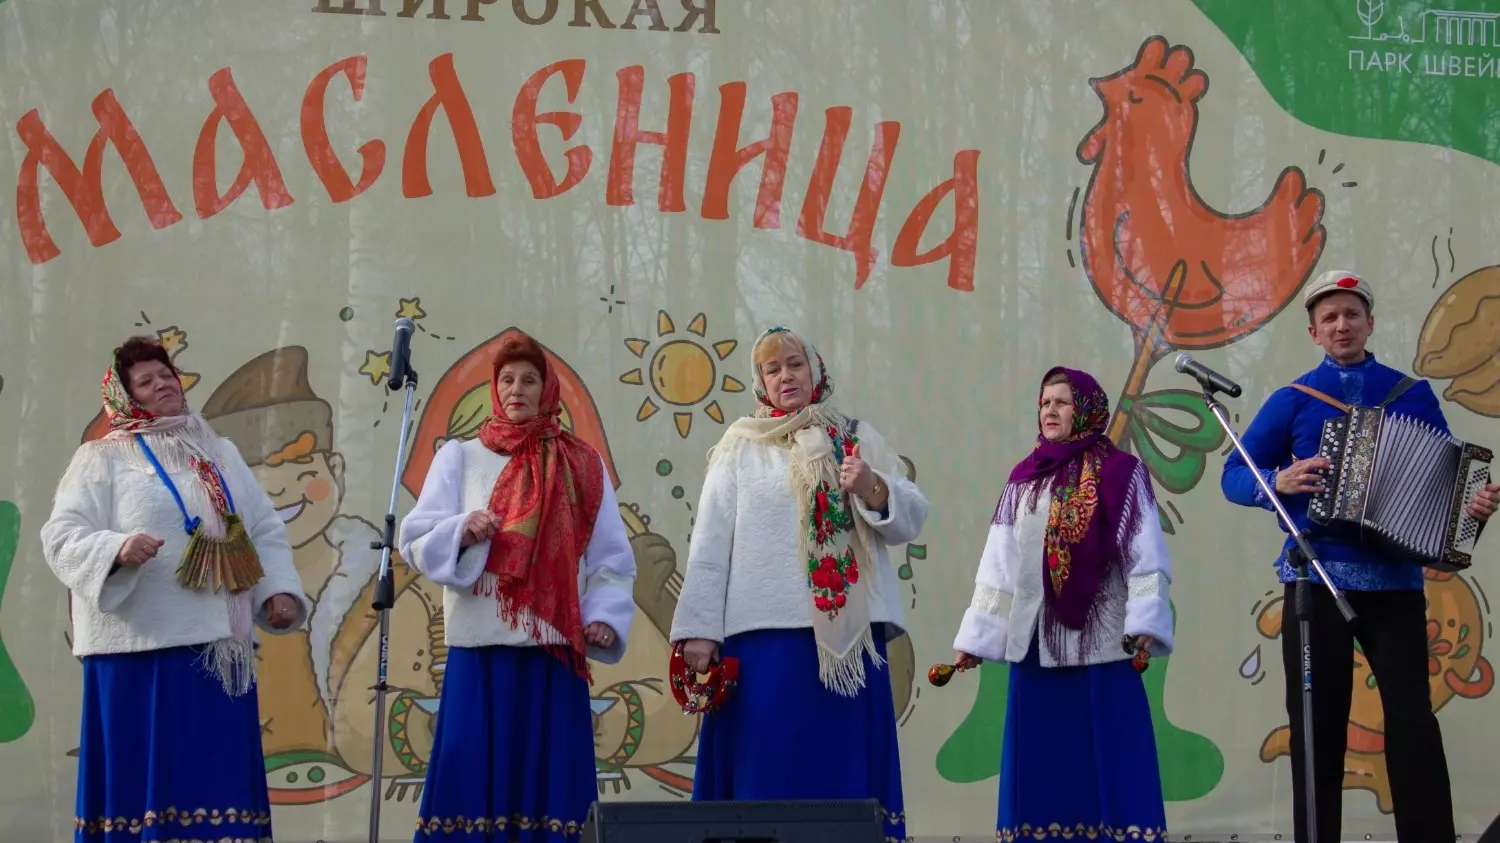 Нижегородцы отпраздновали Масленицу 17 марта